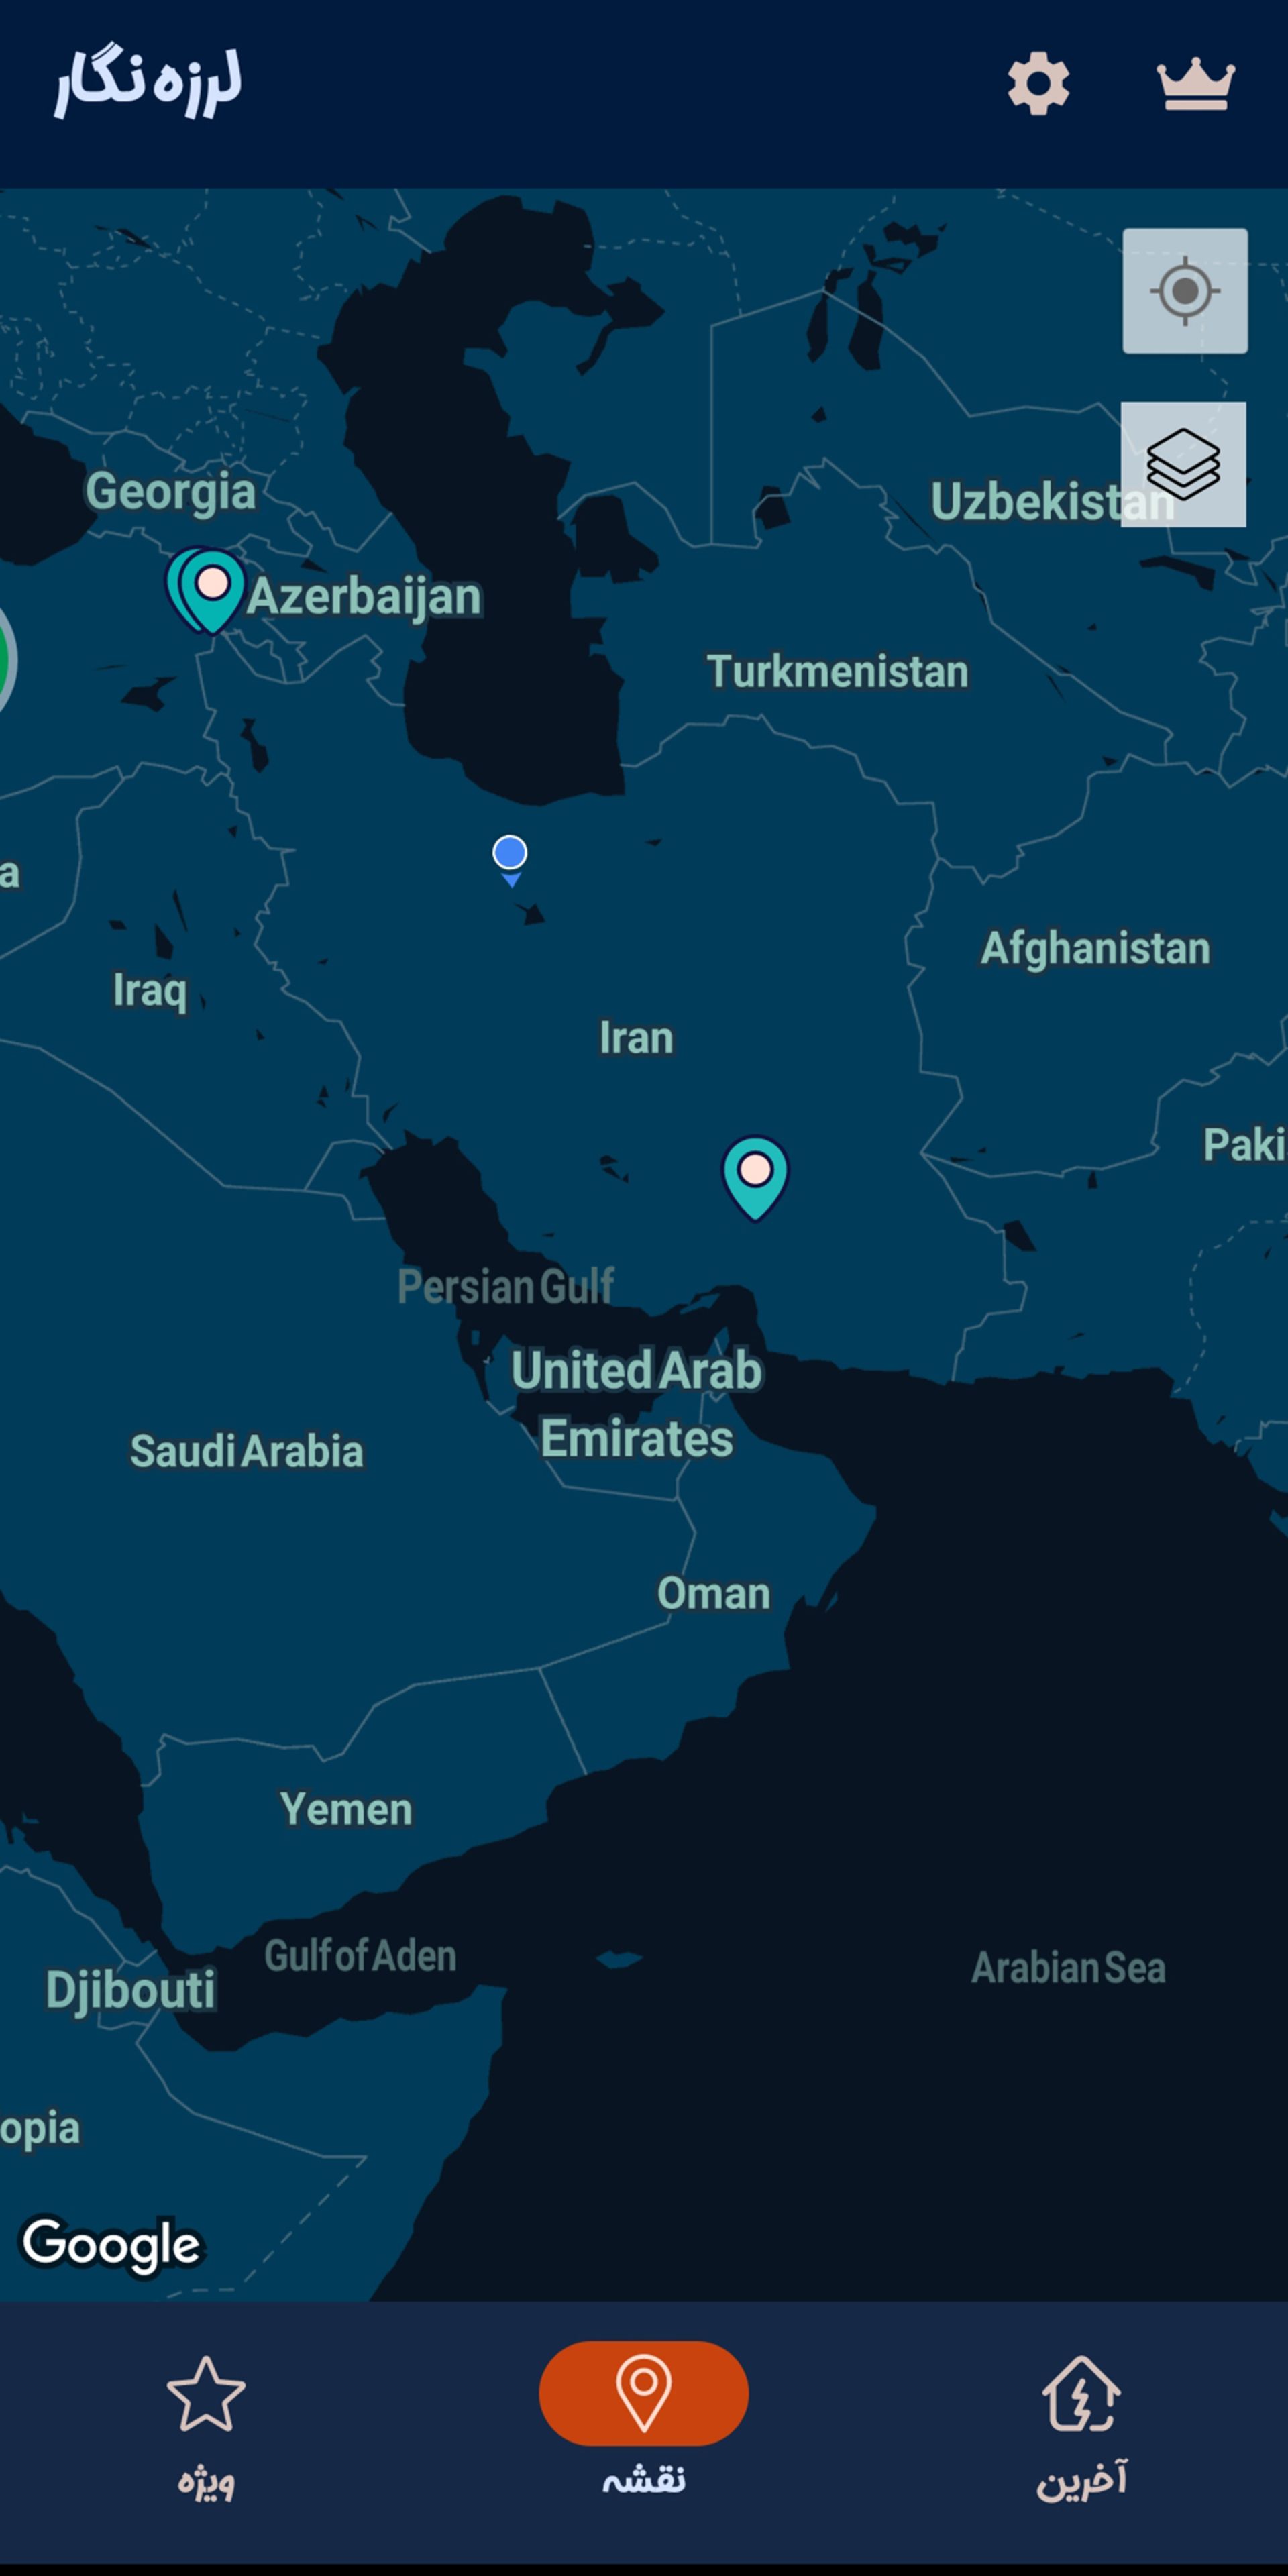 مرجع متخصصين ايران نقشه ماهواره اي ايران و زلزله هاي كشور و اطراف آن